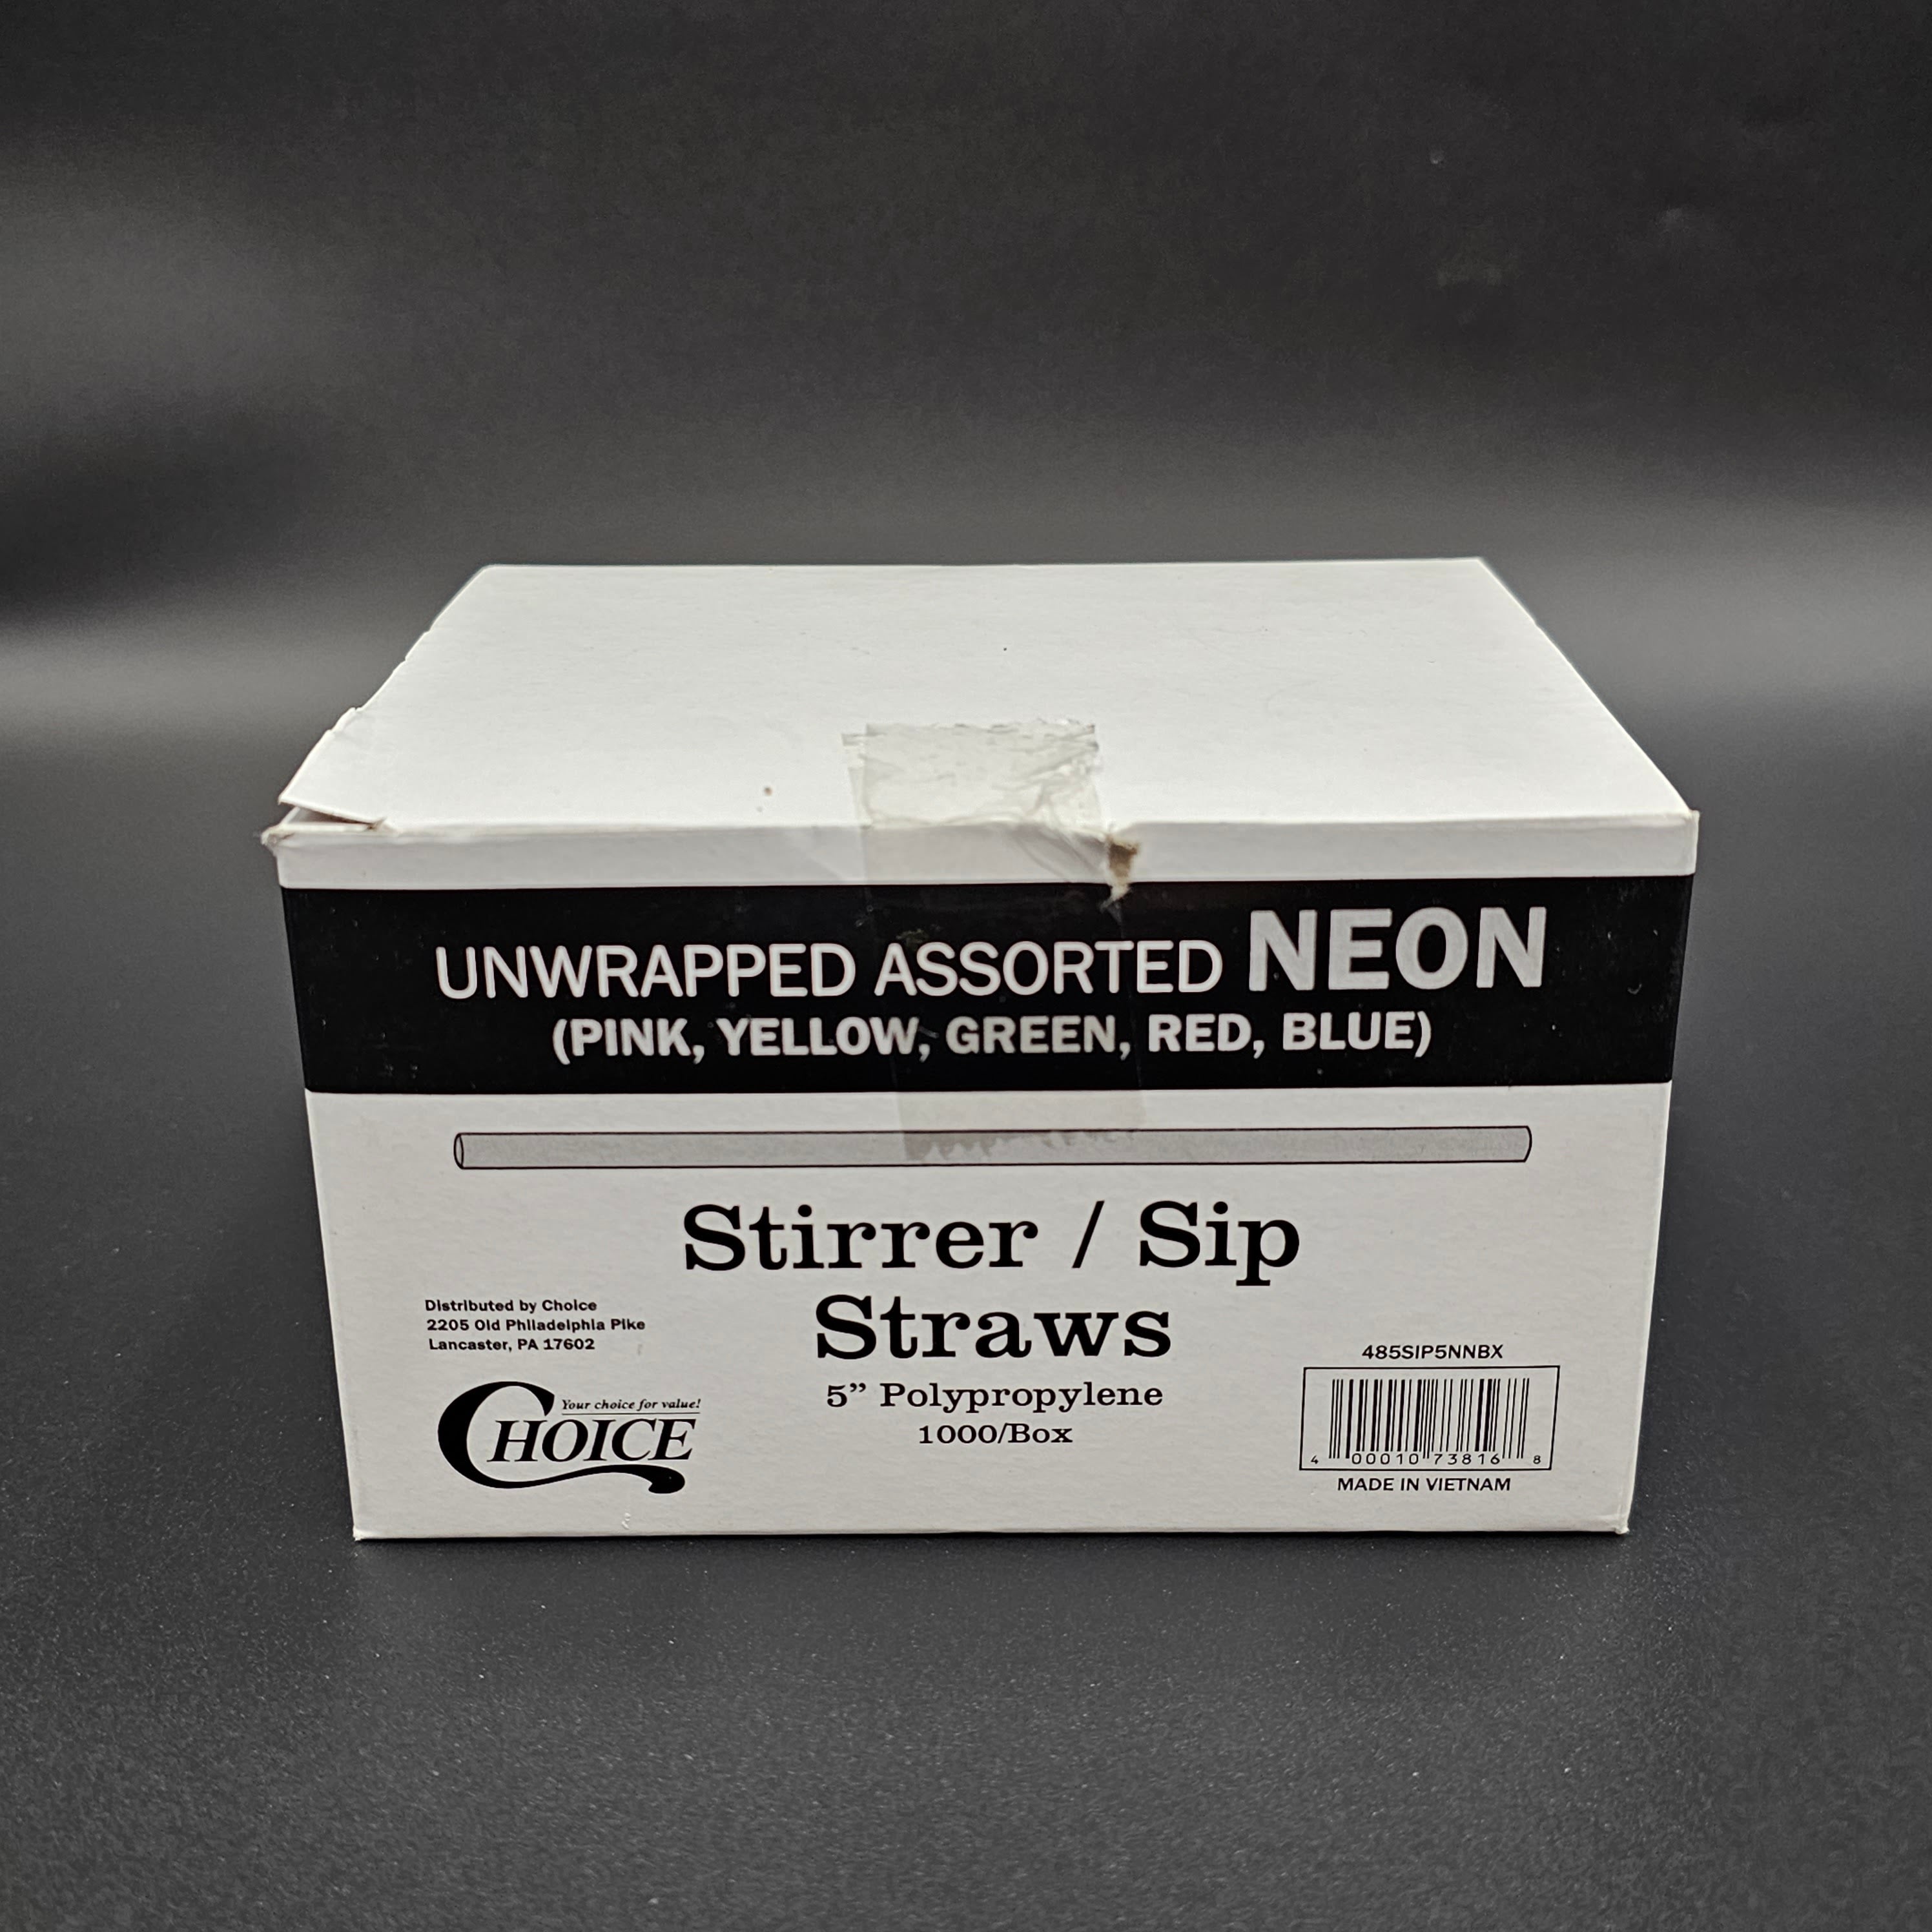 Beverage Assorted Neon Stirrer/Sip Straw Unwrapped 5" - 1000/Box